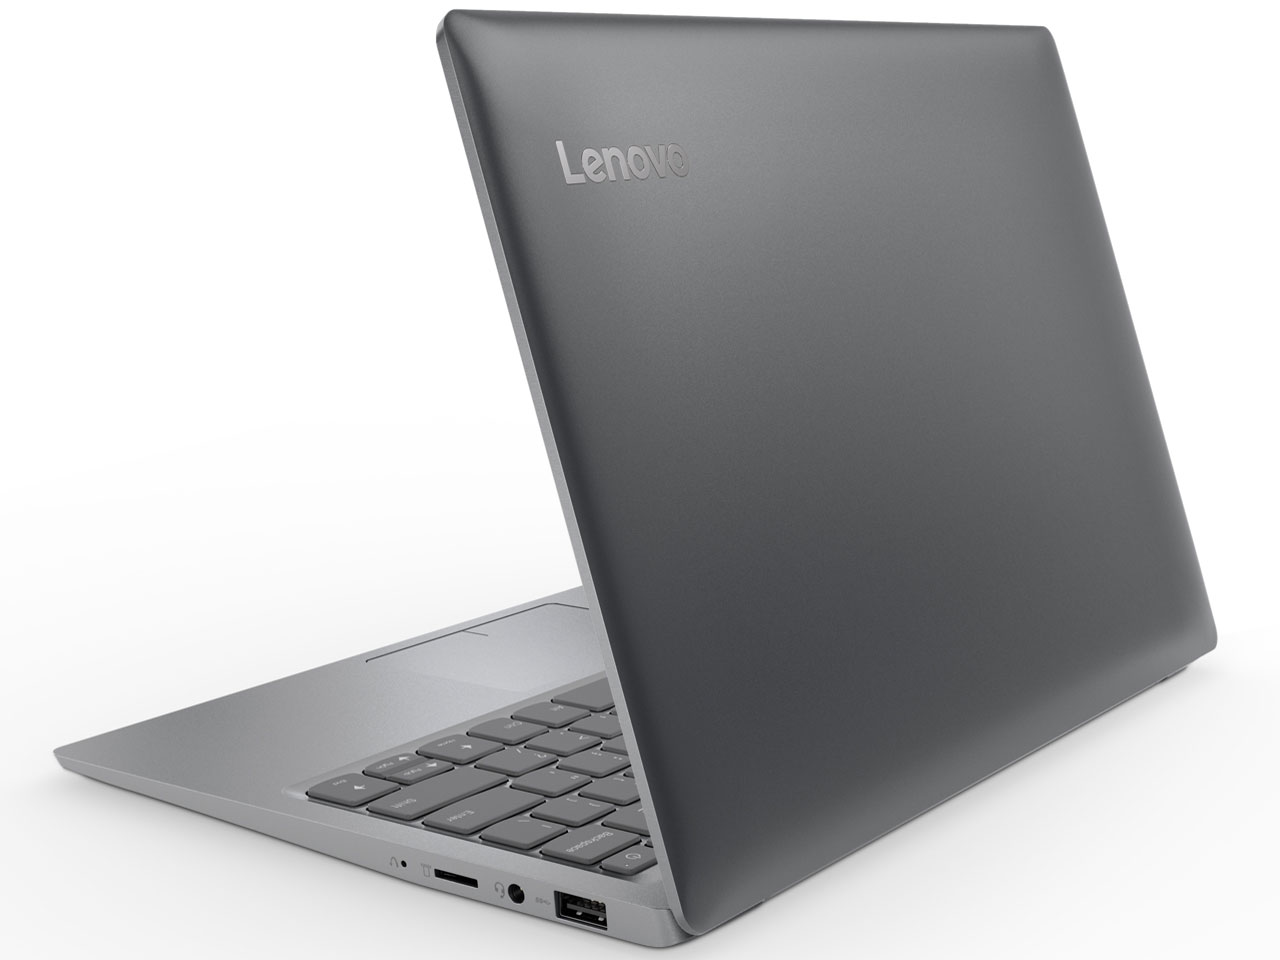 Lenovo Ideapad 100 1s 取扱説明書 レビュー記事 トリセツ